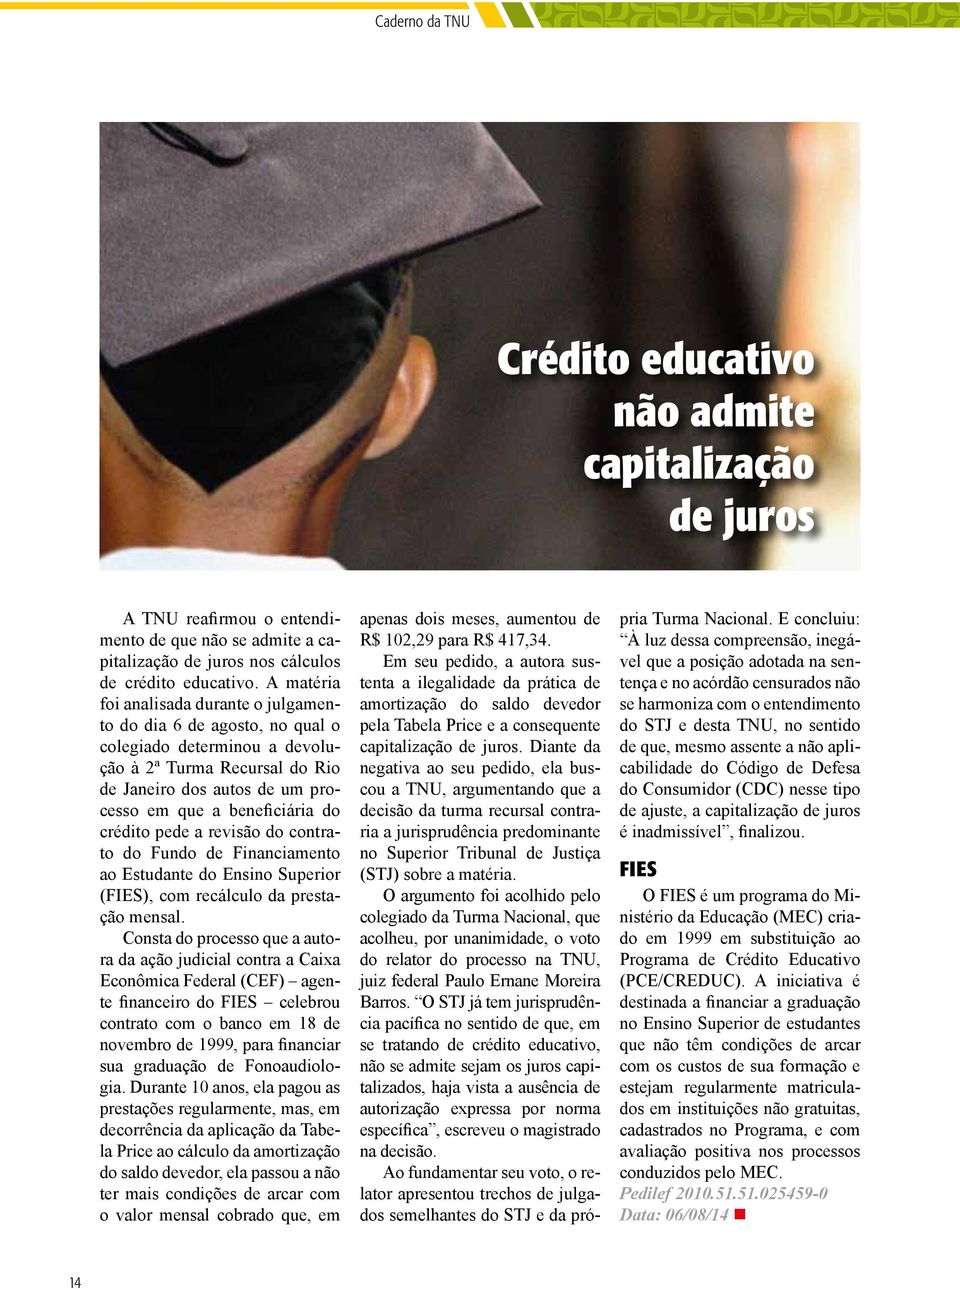 crédito pede a revisão do contrato do Fundo de Financiamento ao Estudante do Ensino Superior (FIES), com recálculo da prestação mensal.